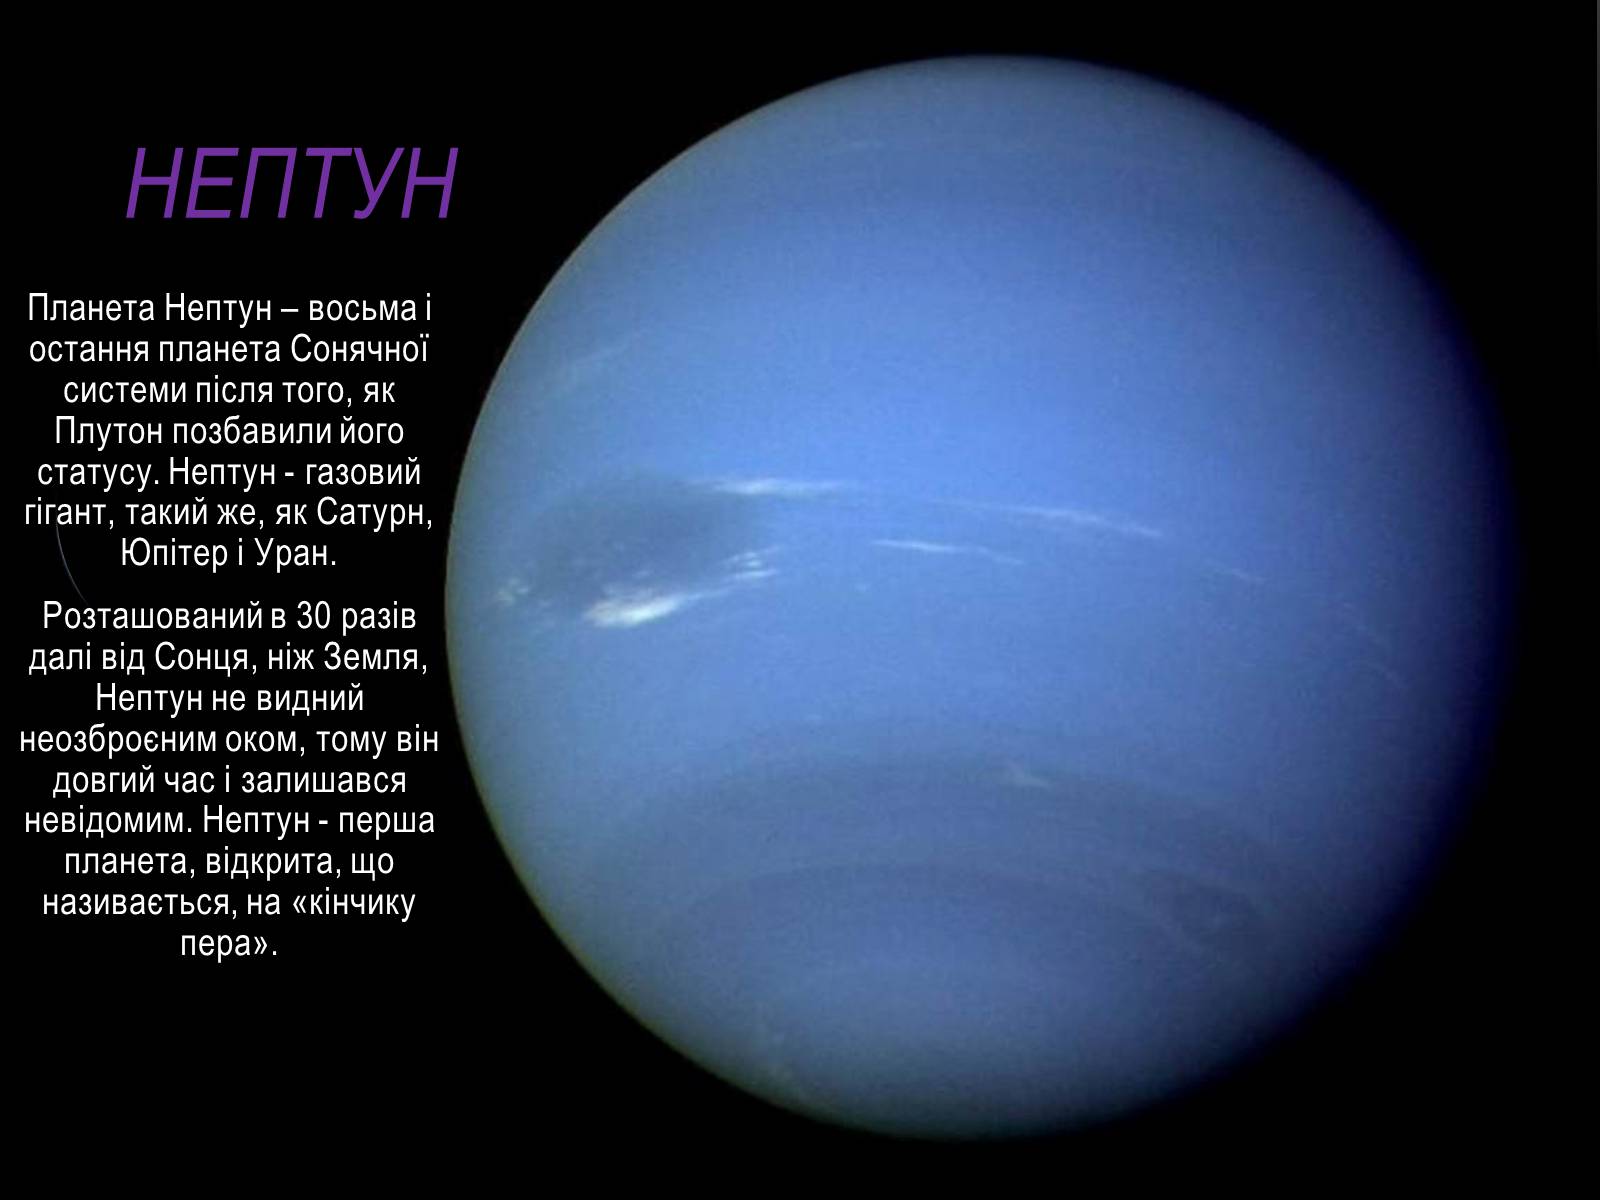 Сообщение о нептуне. Нептун Планета описание для детей. Нептун Планета солнечной системы строение. Проект про планету Нептун. Нептун описание для детей.